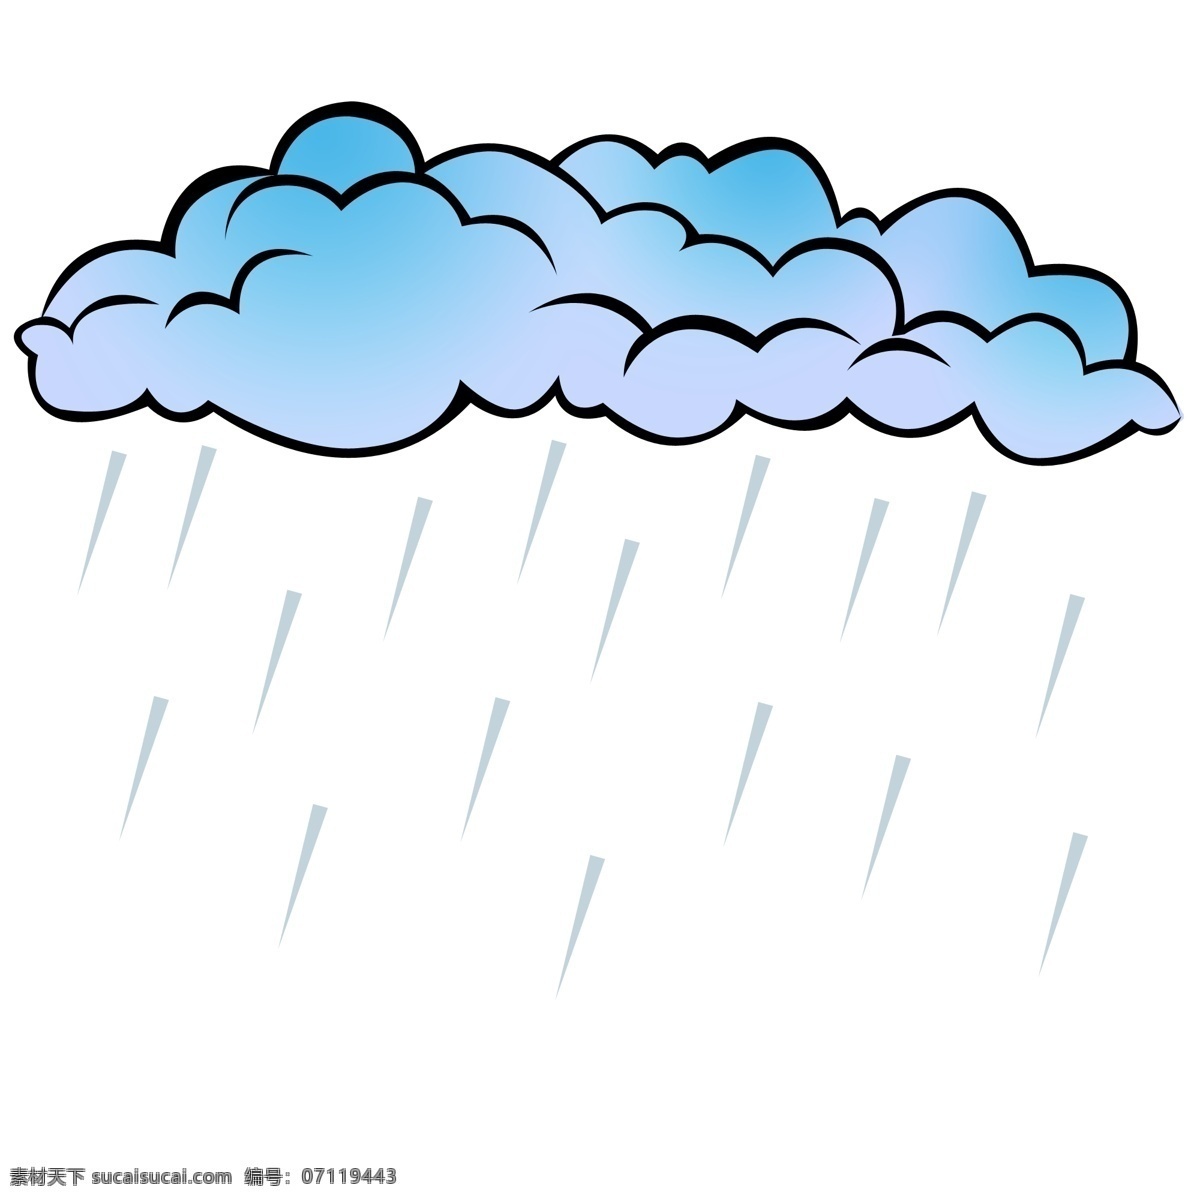 阵雨 天气 卡通 插画 蓝色云朵 乌云 阵雨天气 下雨天气 雨滴 雷阵雨 天气预报 天气现象 云朵装饰插画